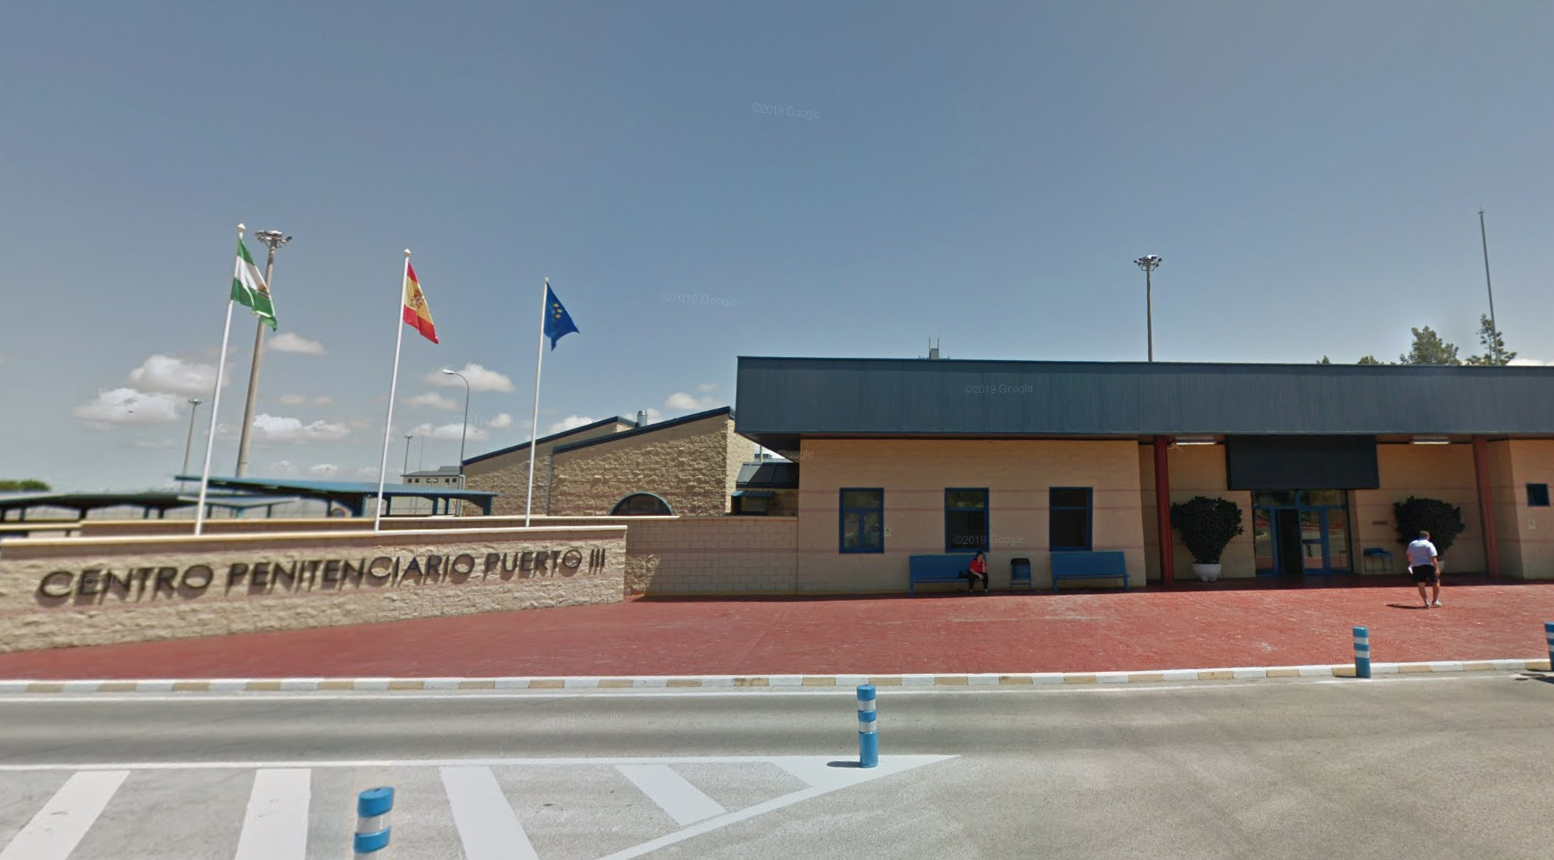 La prisión de Puerto III, en una imagen de Google Maps.